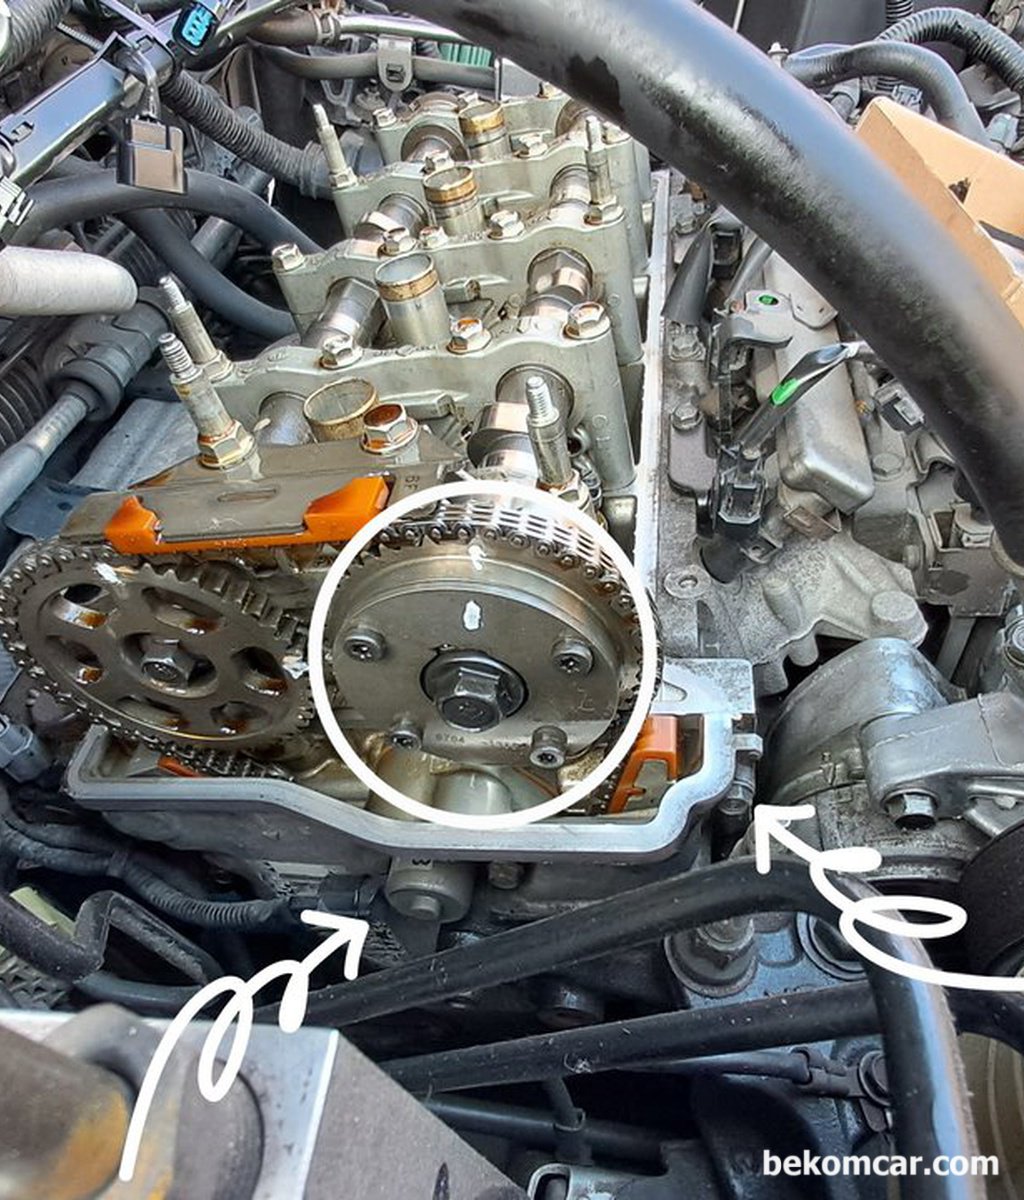 혼다 어코드 8세대 2.4L 차량의 VTEC 스풀밸브 오일누유가 있다고 하는데 어디를 점검해야 하나요?|bekomcar.com